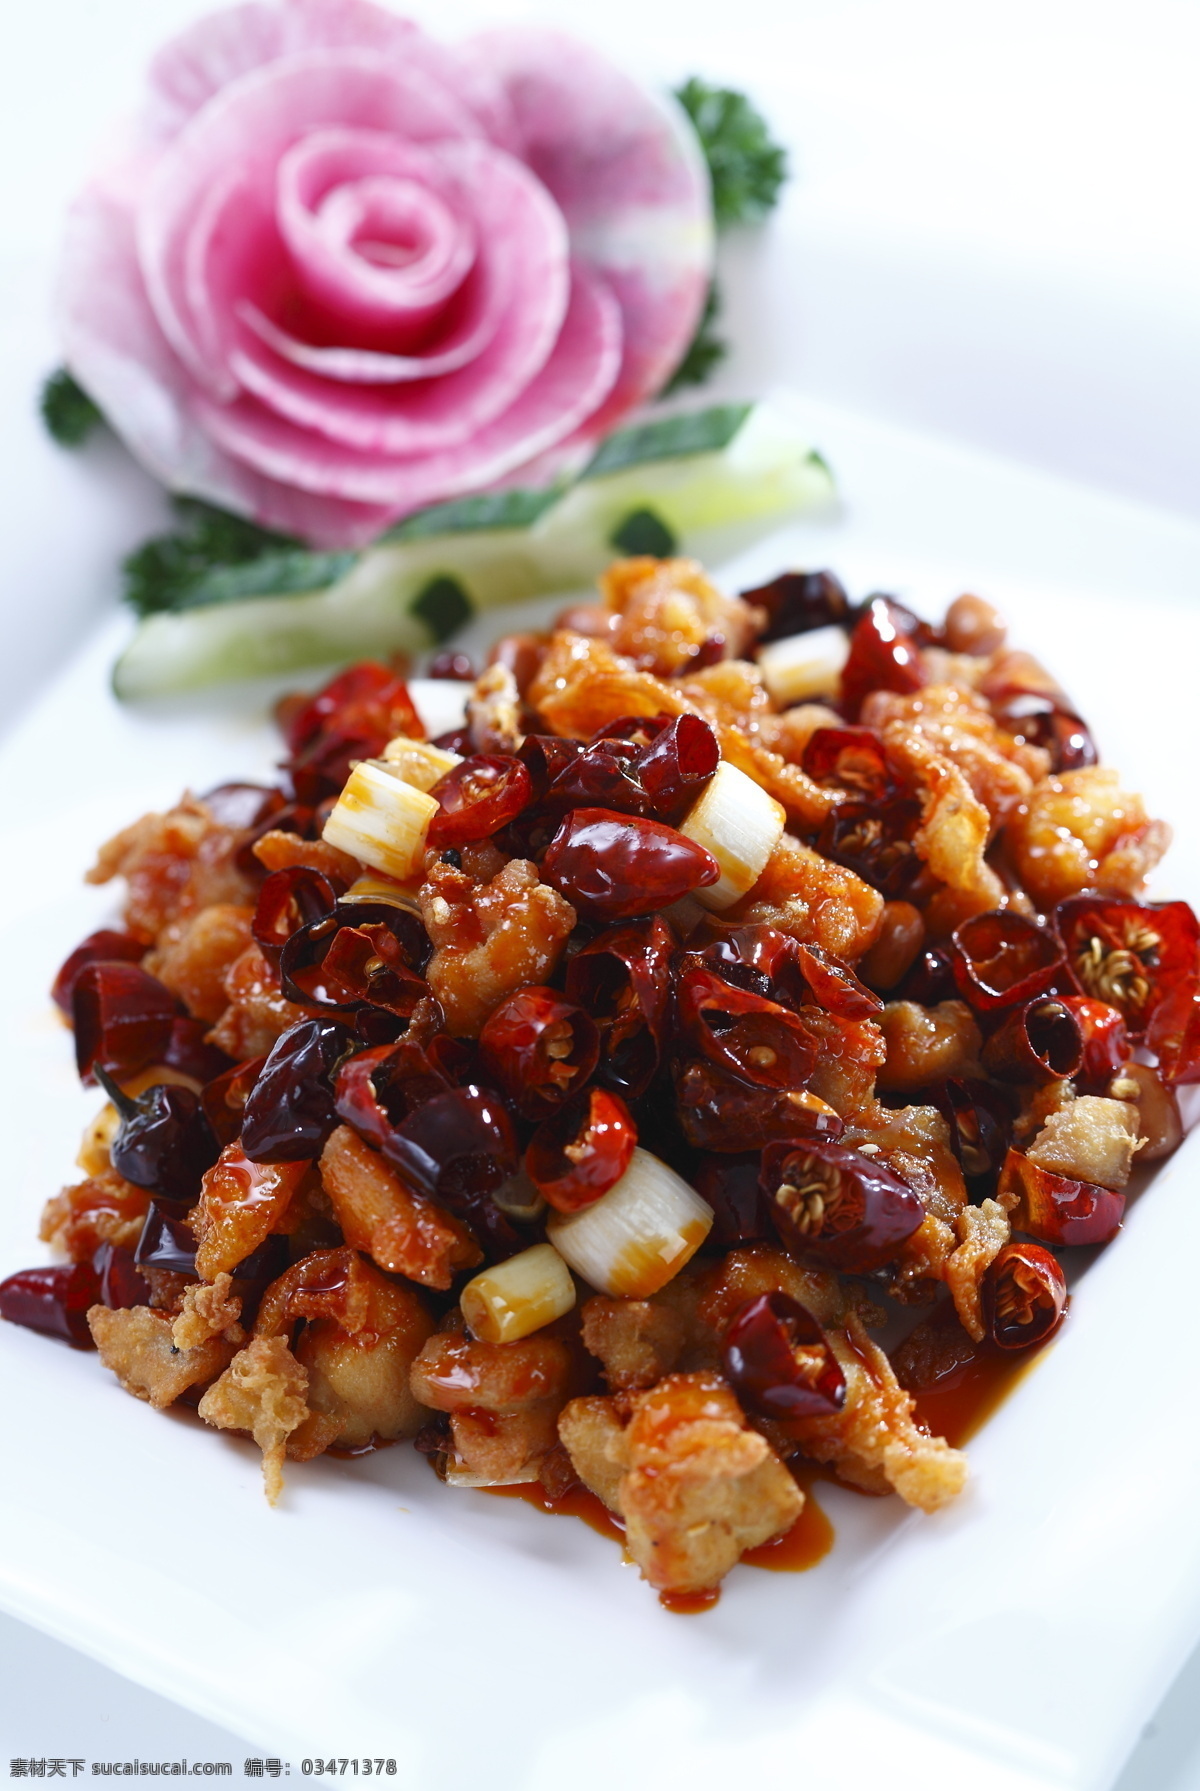 歌乐山辣子鸡 高清菜谱 菜品全套 传统美食 餐饮美食